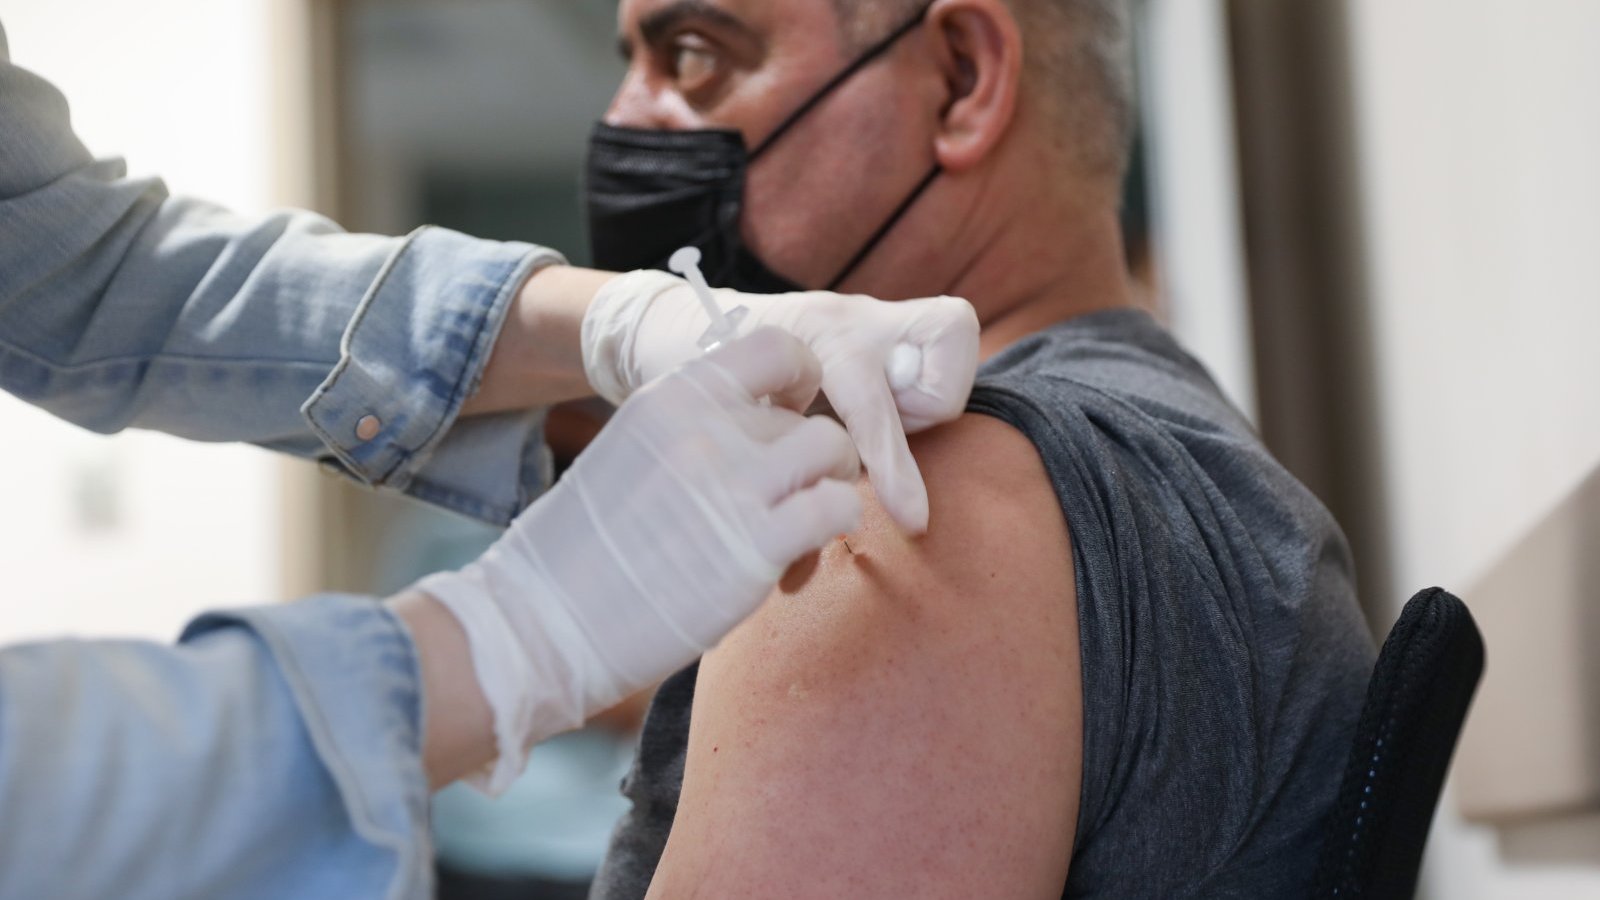 La Turquie dépasse les 35 millions de vaccins contre le coronavirus administrés